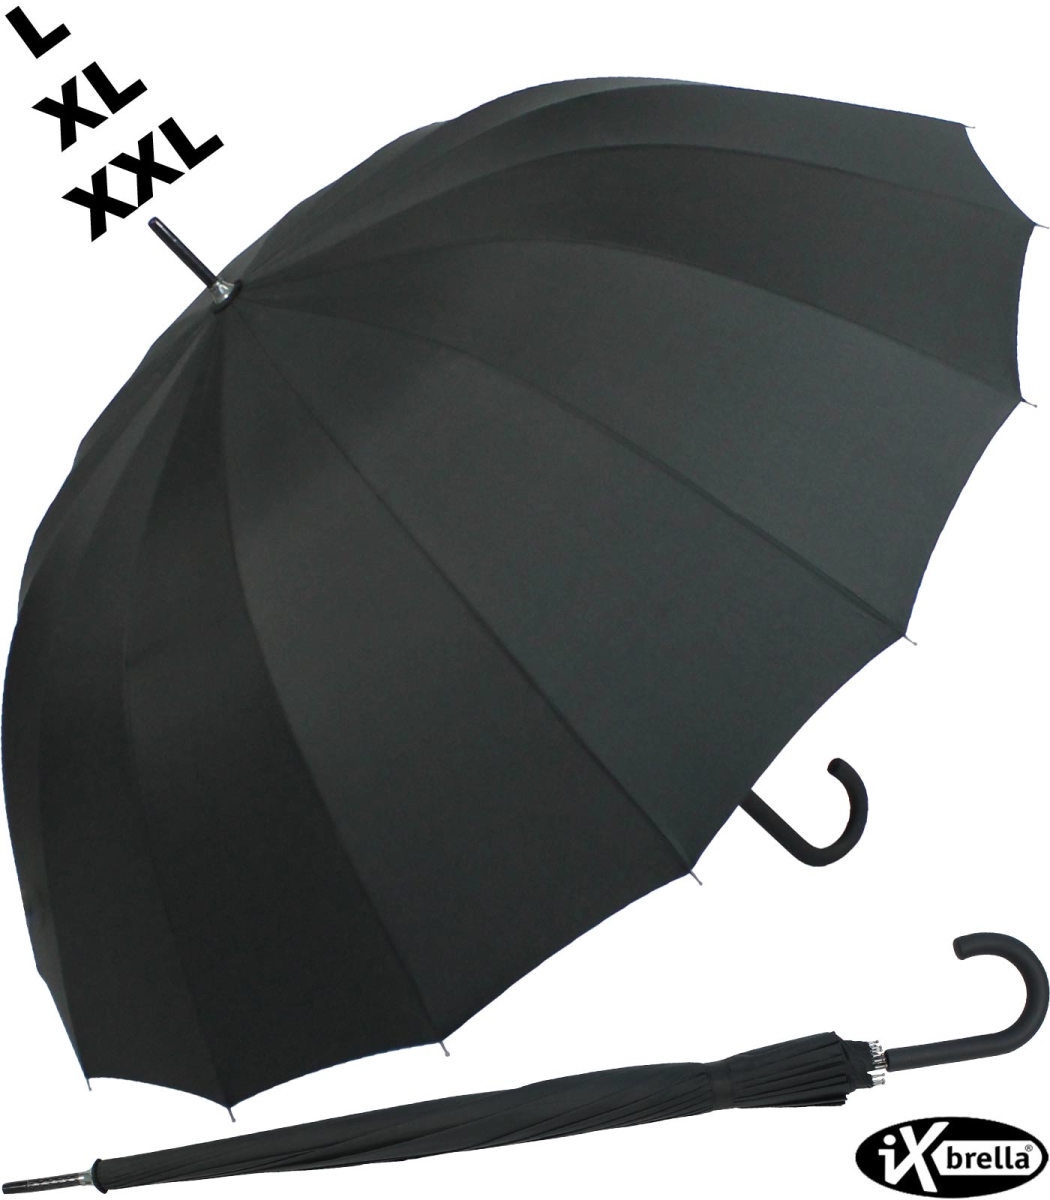 Größe XXL iX-brella Leichter Voll-Fiberglas- Regenschirm für 2 Personen sehr stabil Golfschirm schwarz 